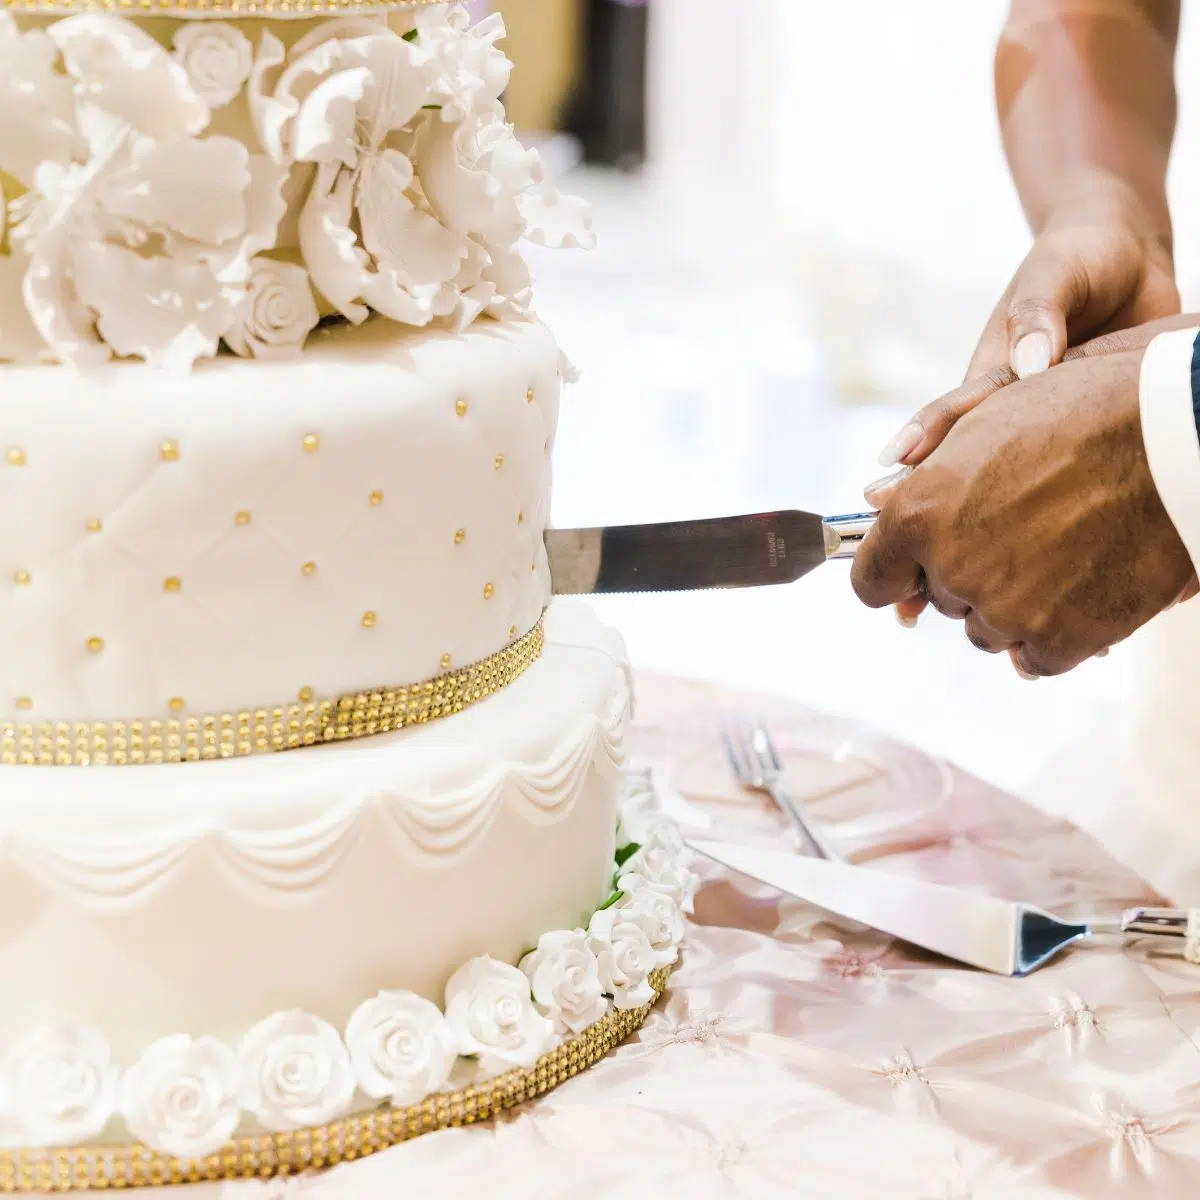 صورة مربعة لكعكة الزفاف يتم قطعها.